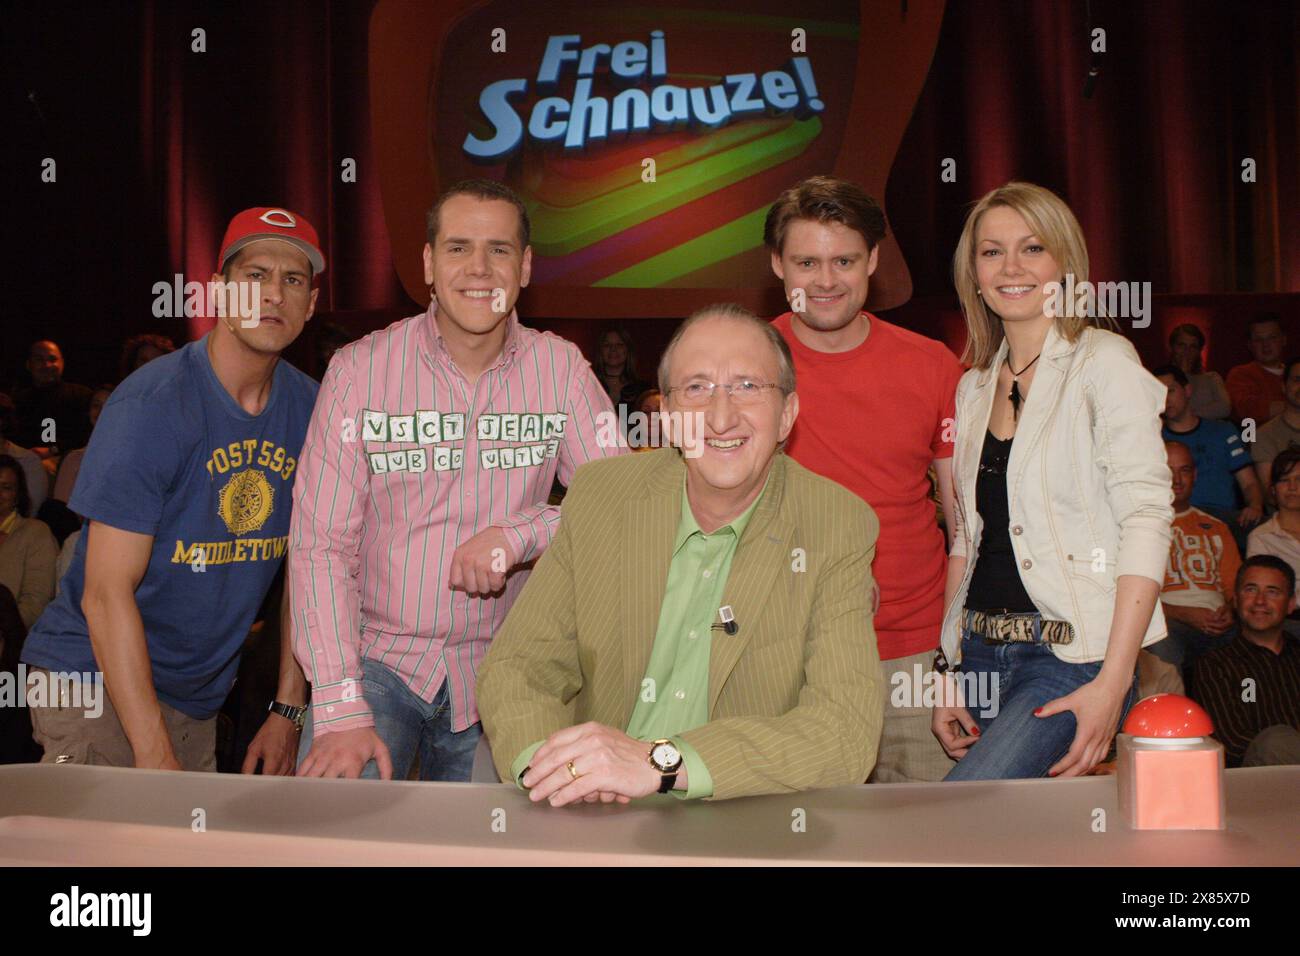 Frei Schnauze, improvisations-Comedy-Show, Deutschland 2005 - 2008, hier sitzend Mike Krüger als Moderator, dahiner stehen Mirco Nontschew, Jan van Weyde, Max Giermann und Martina Hill (?). Banque D'Images